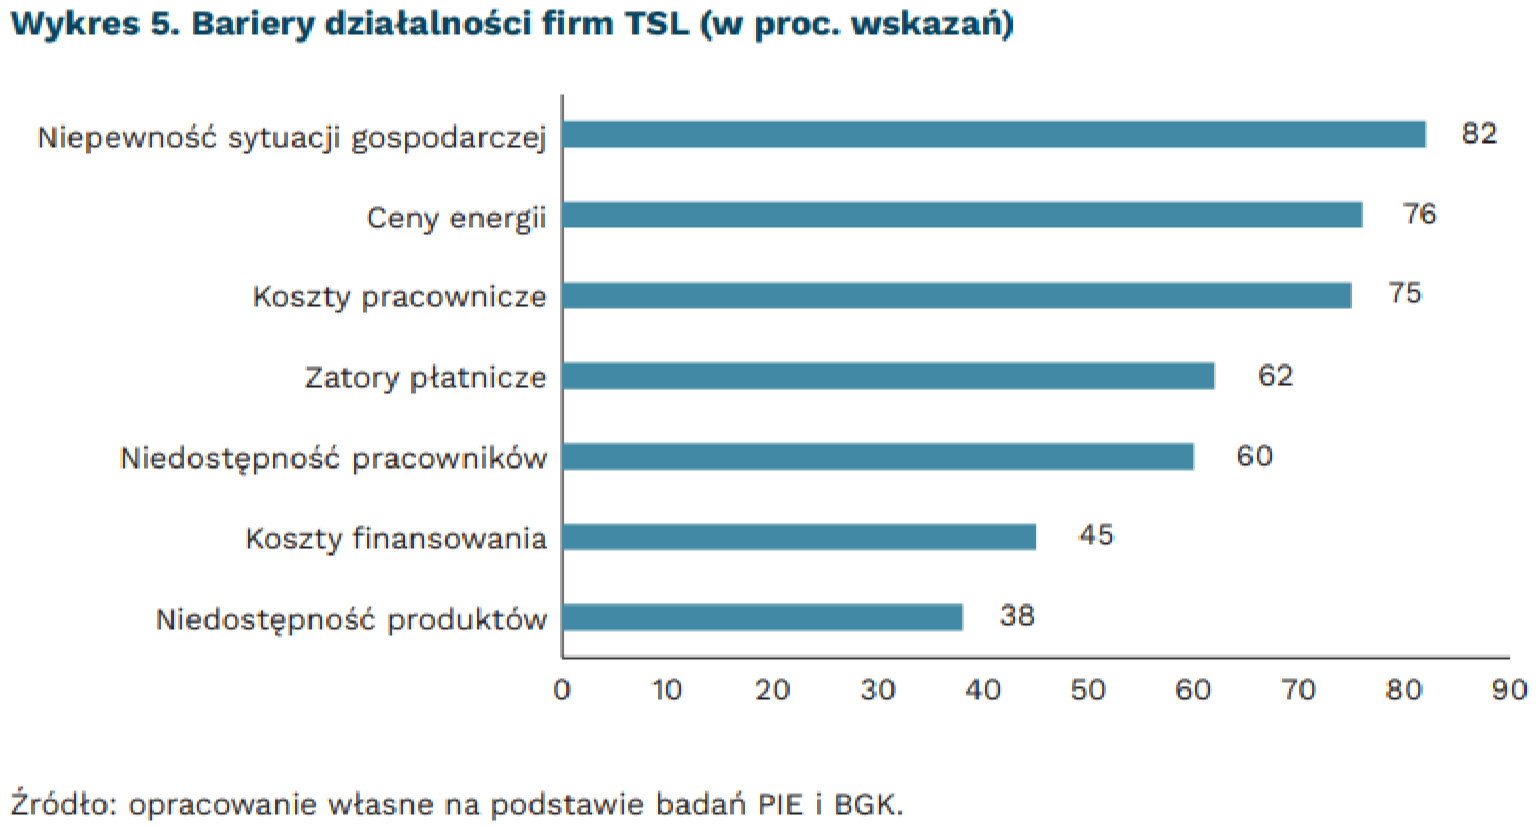 Bariery działalności firm TSL (w proc. wskazań) w badaniu MIK w maju 2022, mat. PIE